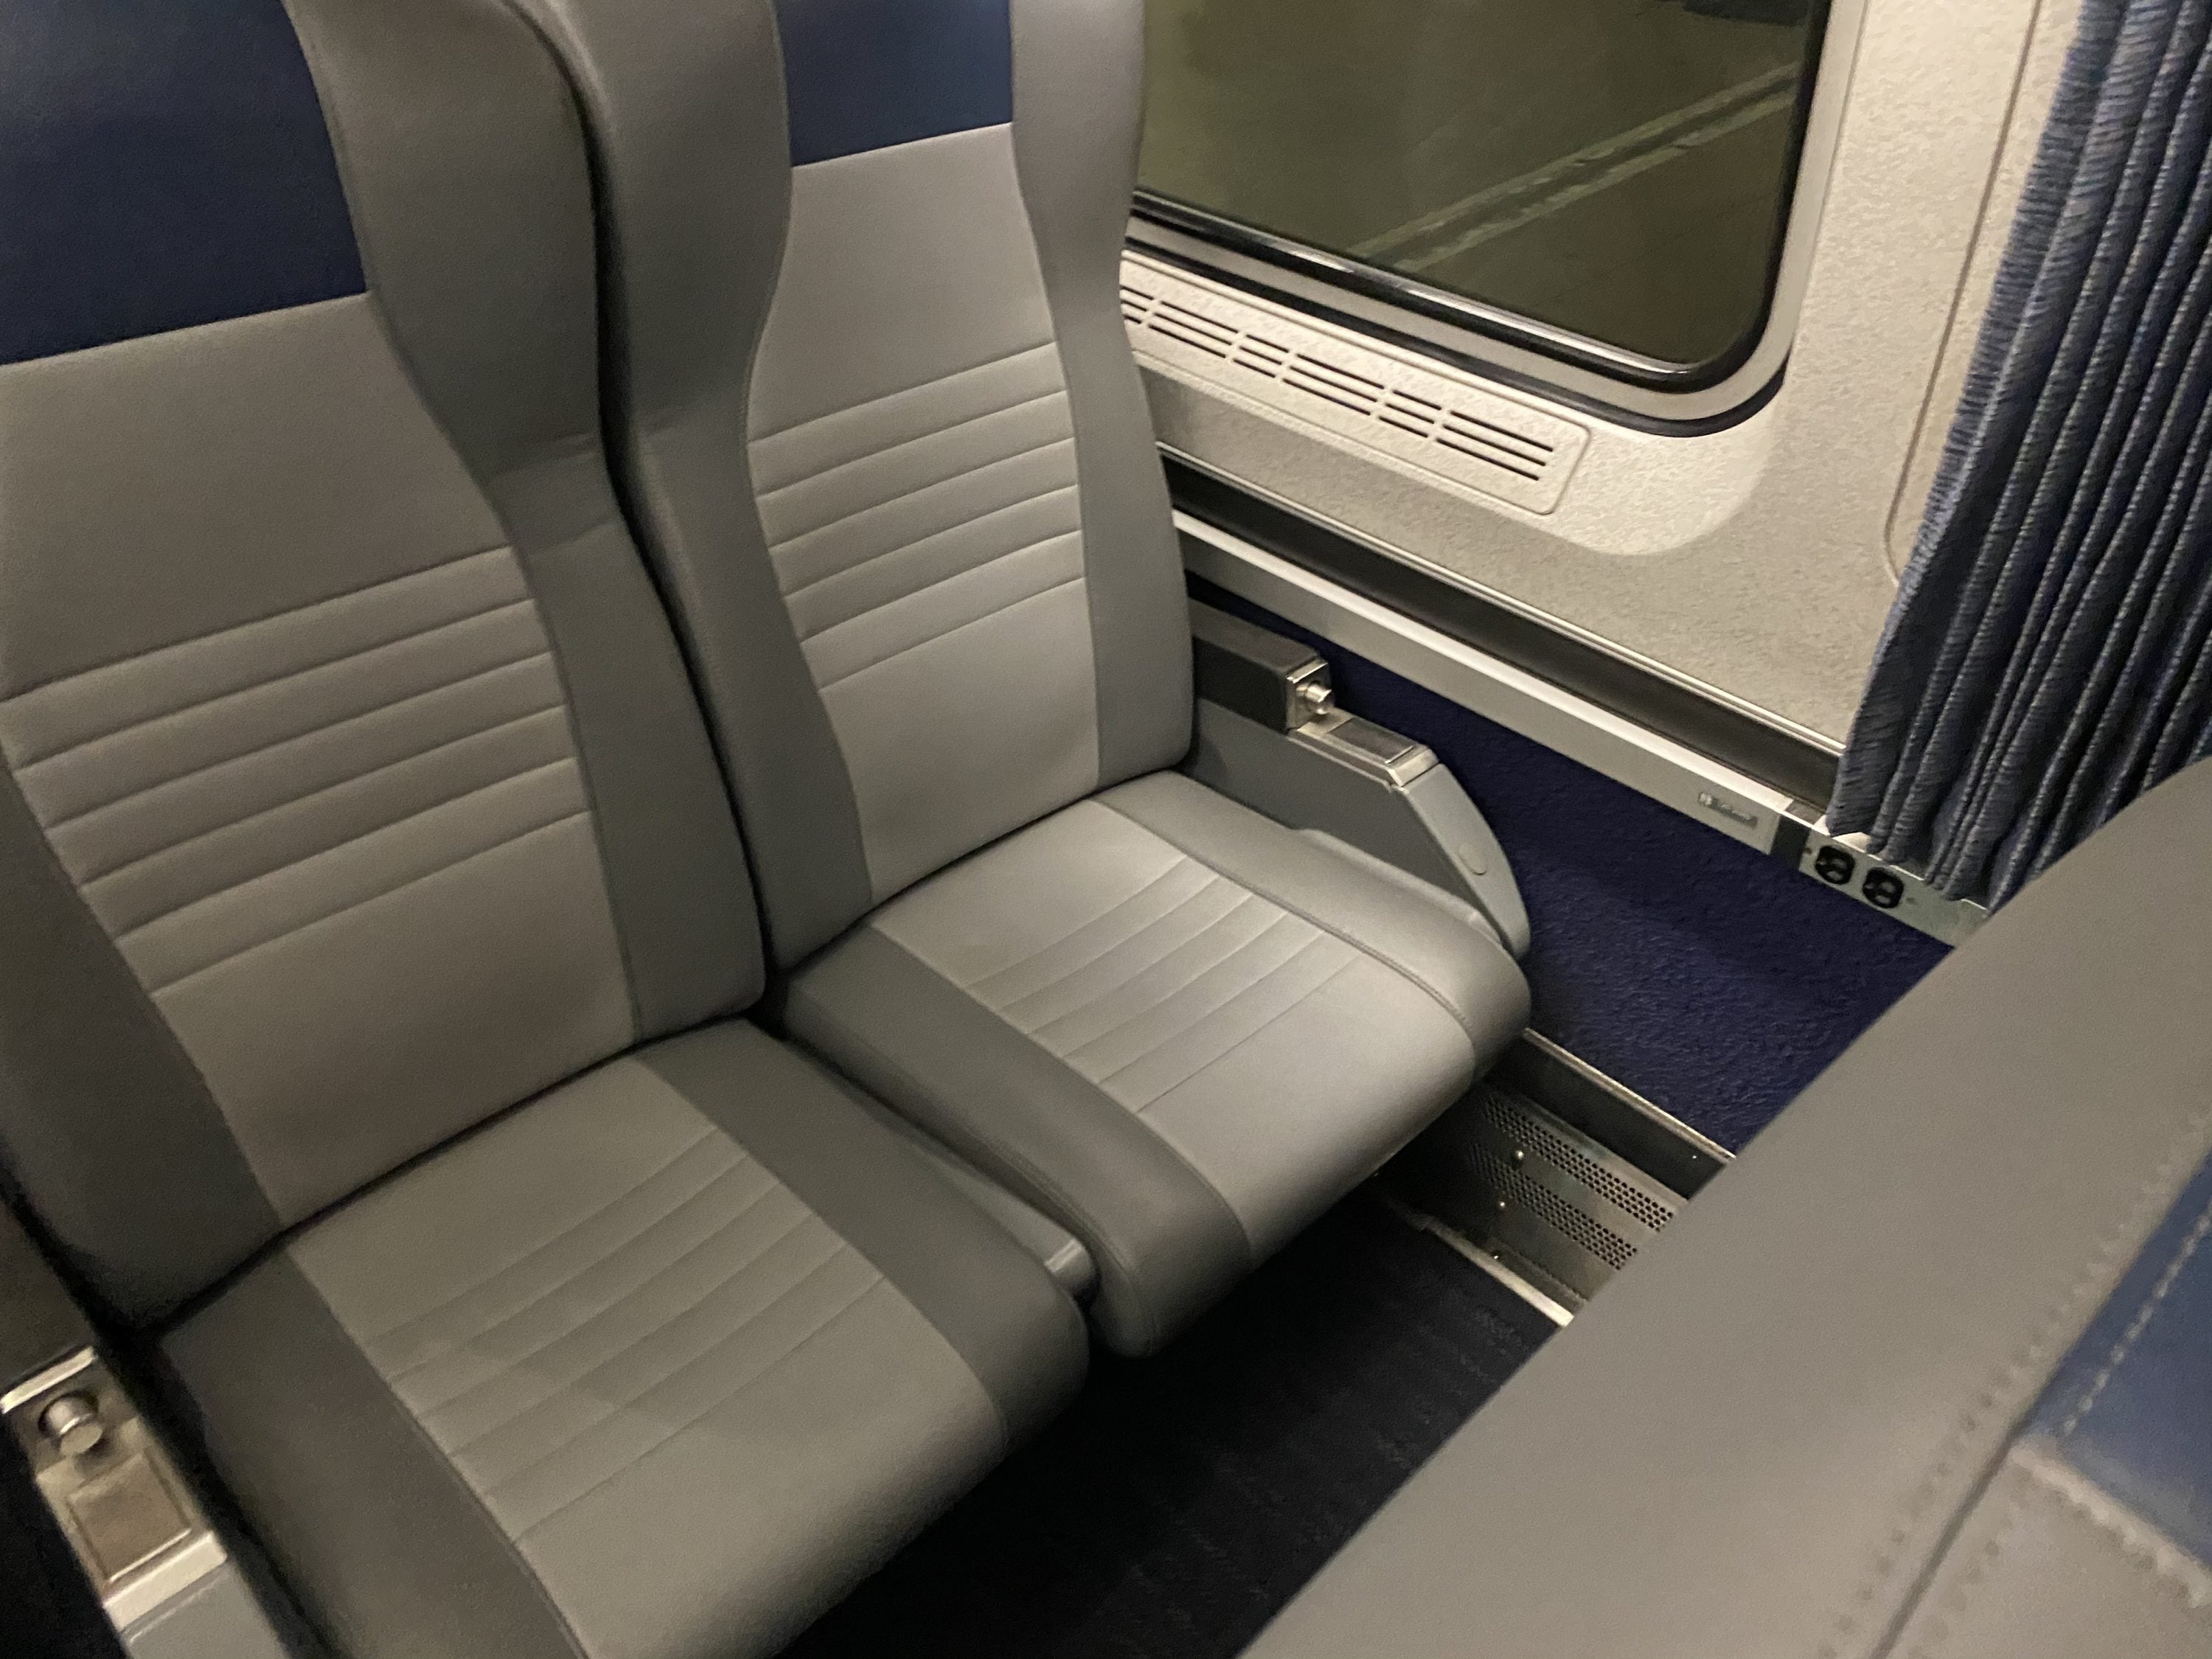 Amtrak Northeast Regional Business Class - Full Review [2021]